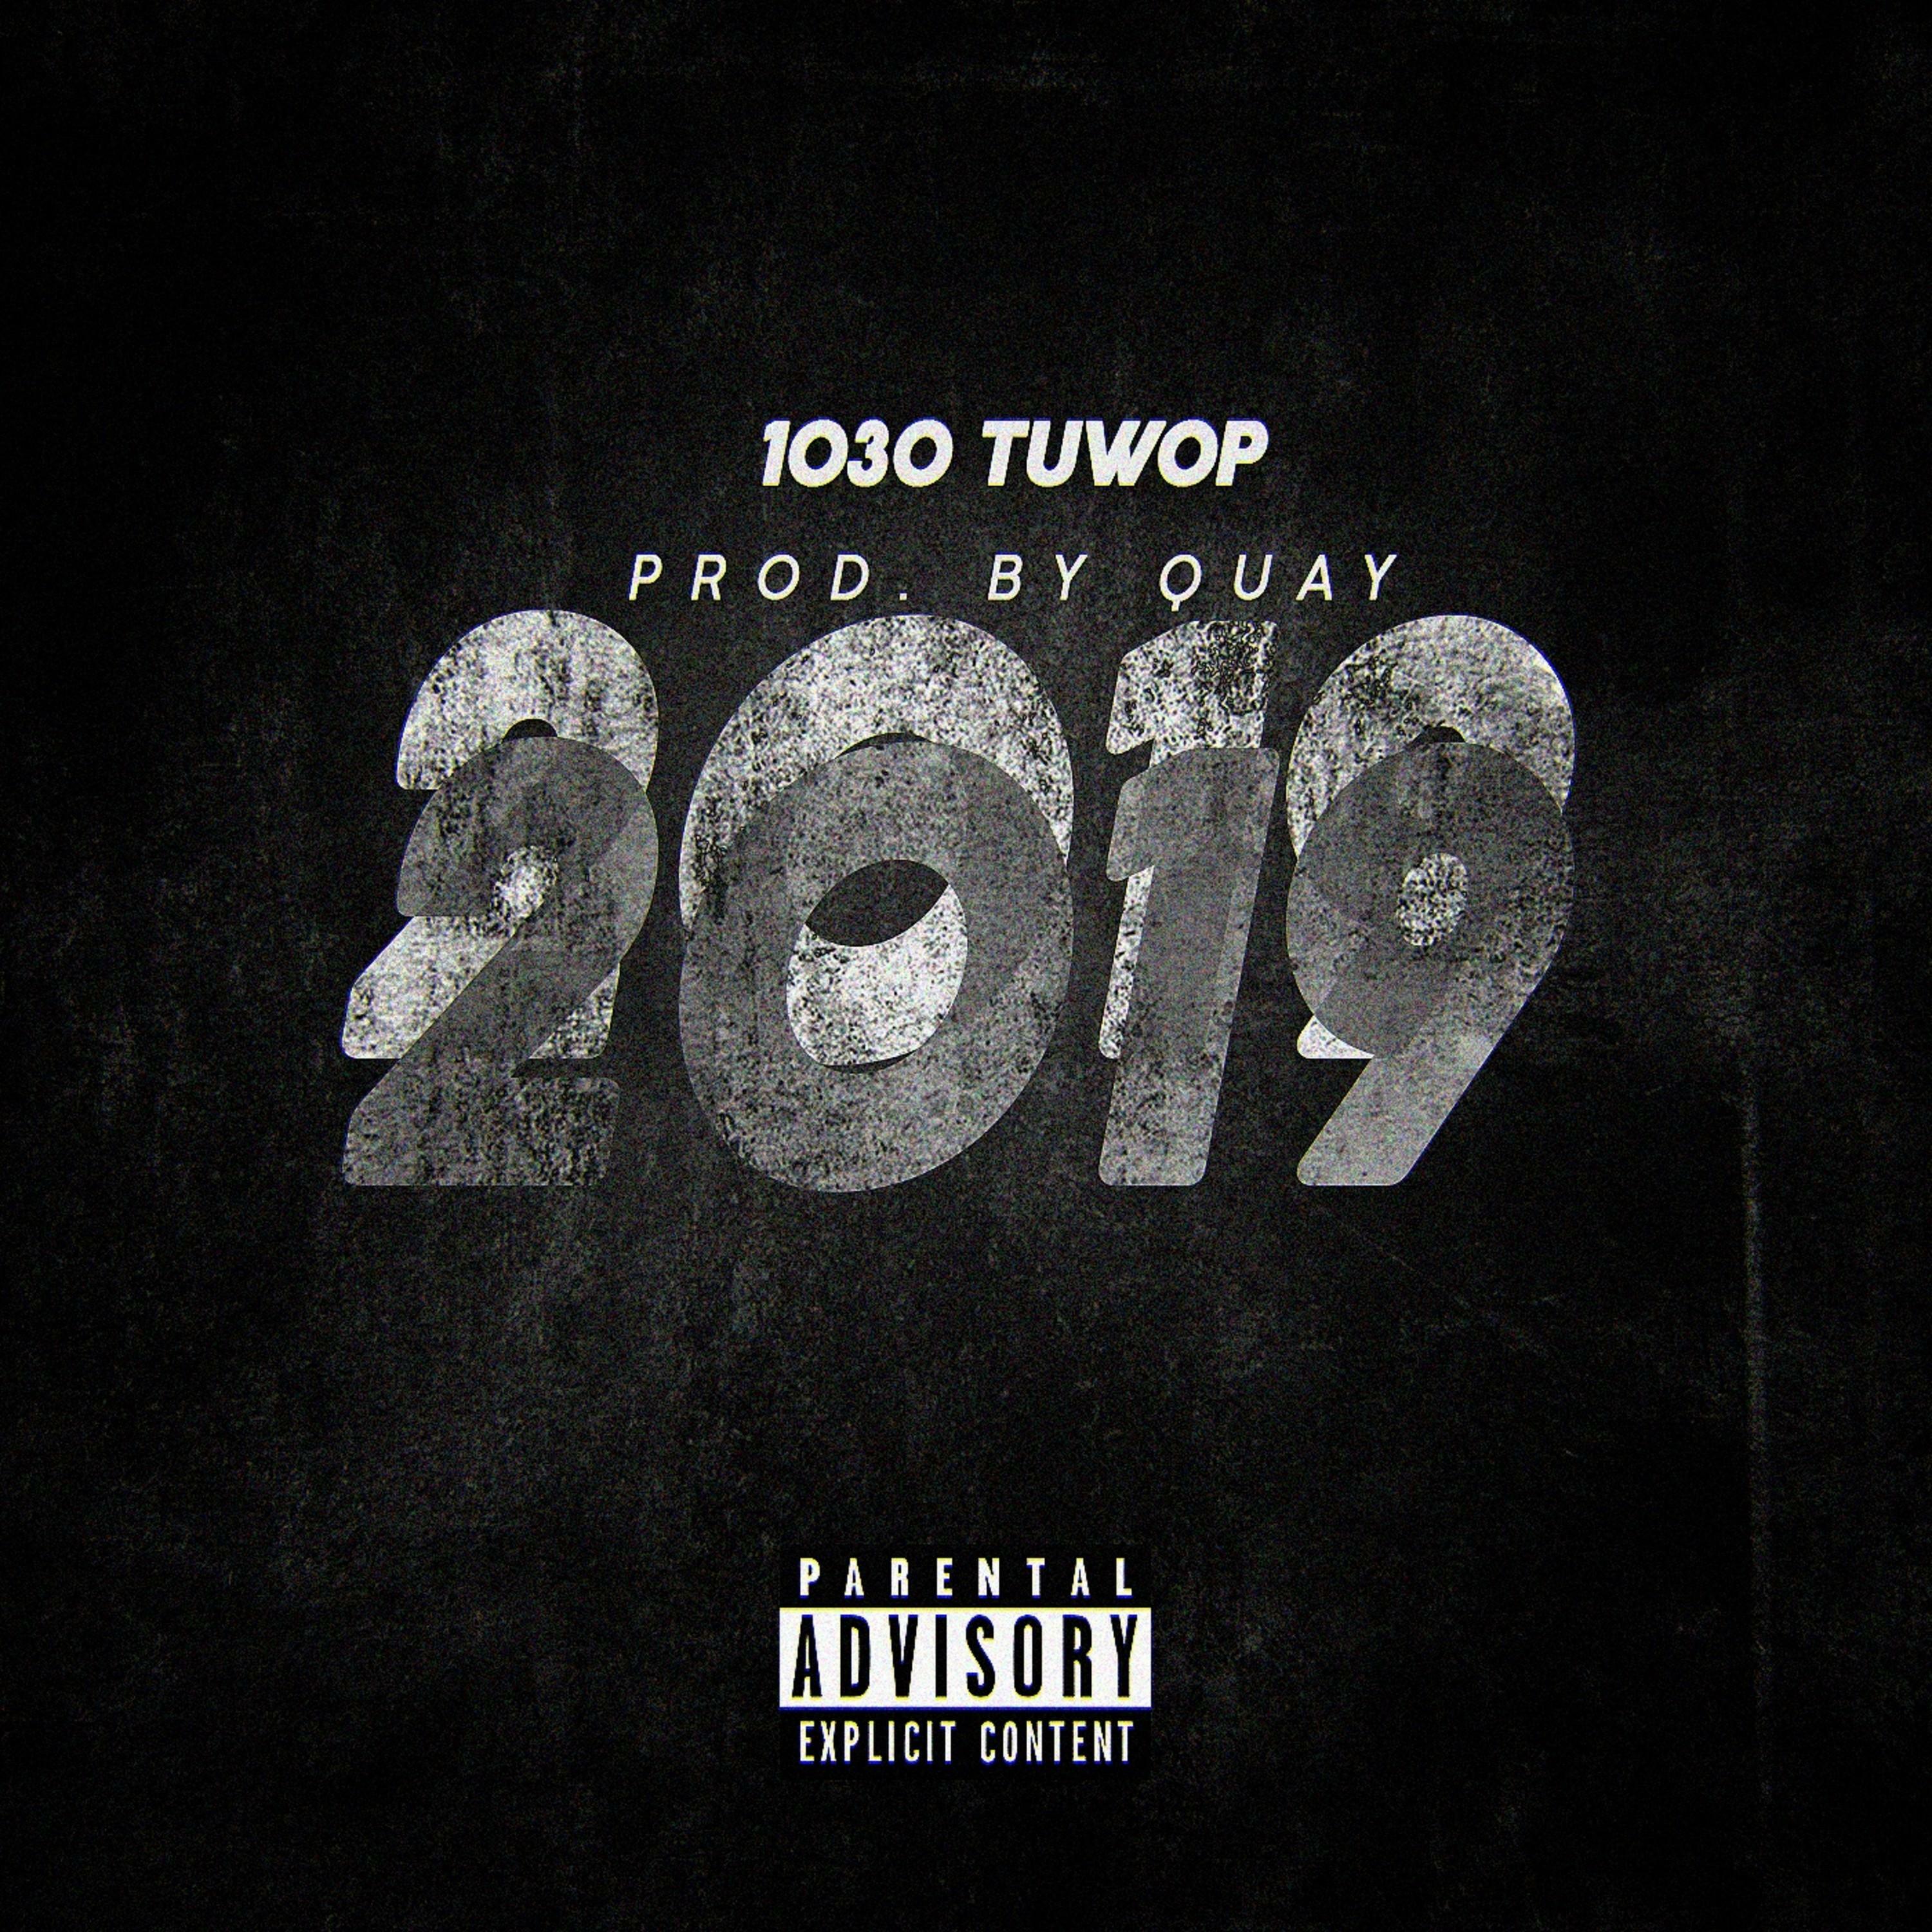 1030 Tuwop - 2019 | iHeart